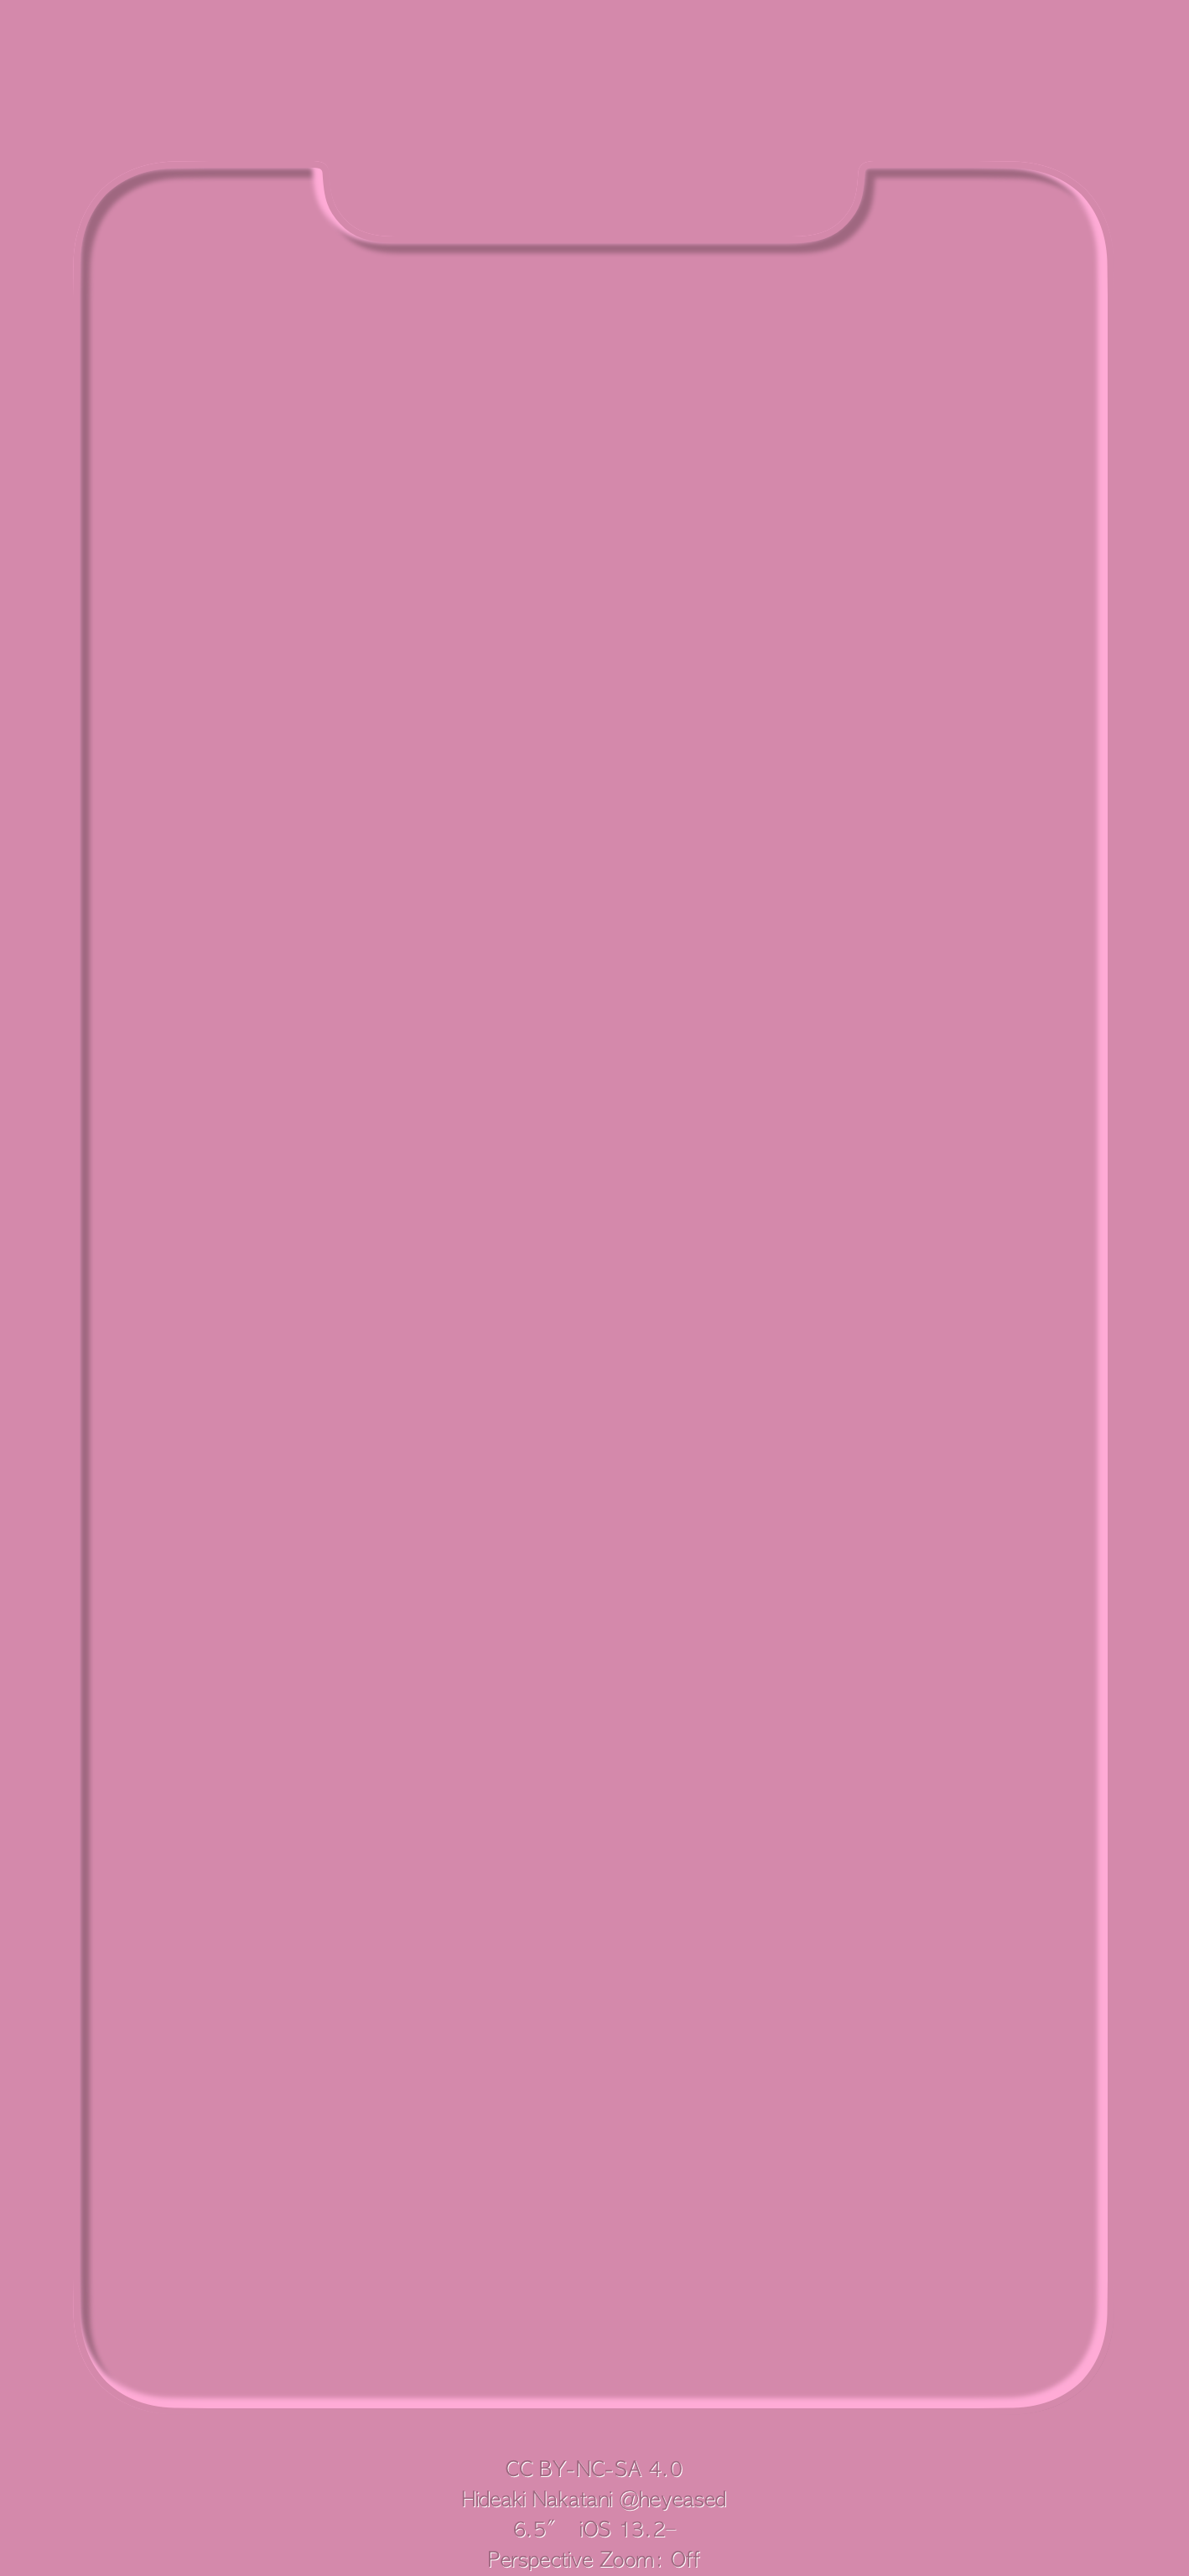 3d border max pink iphone wallpaper heyeased idownloadblog